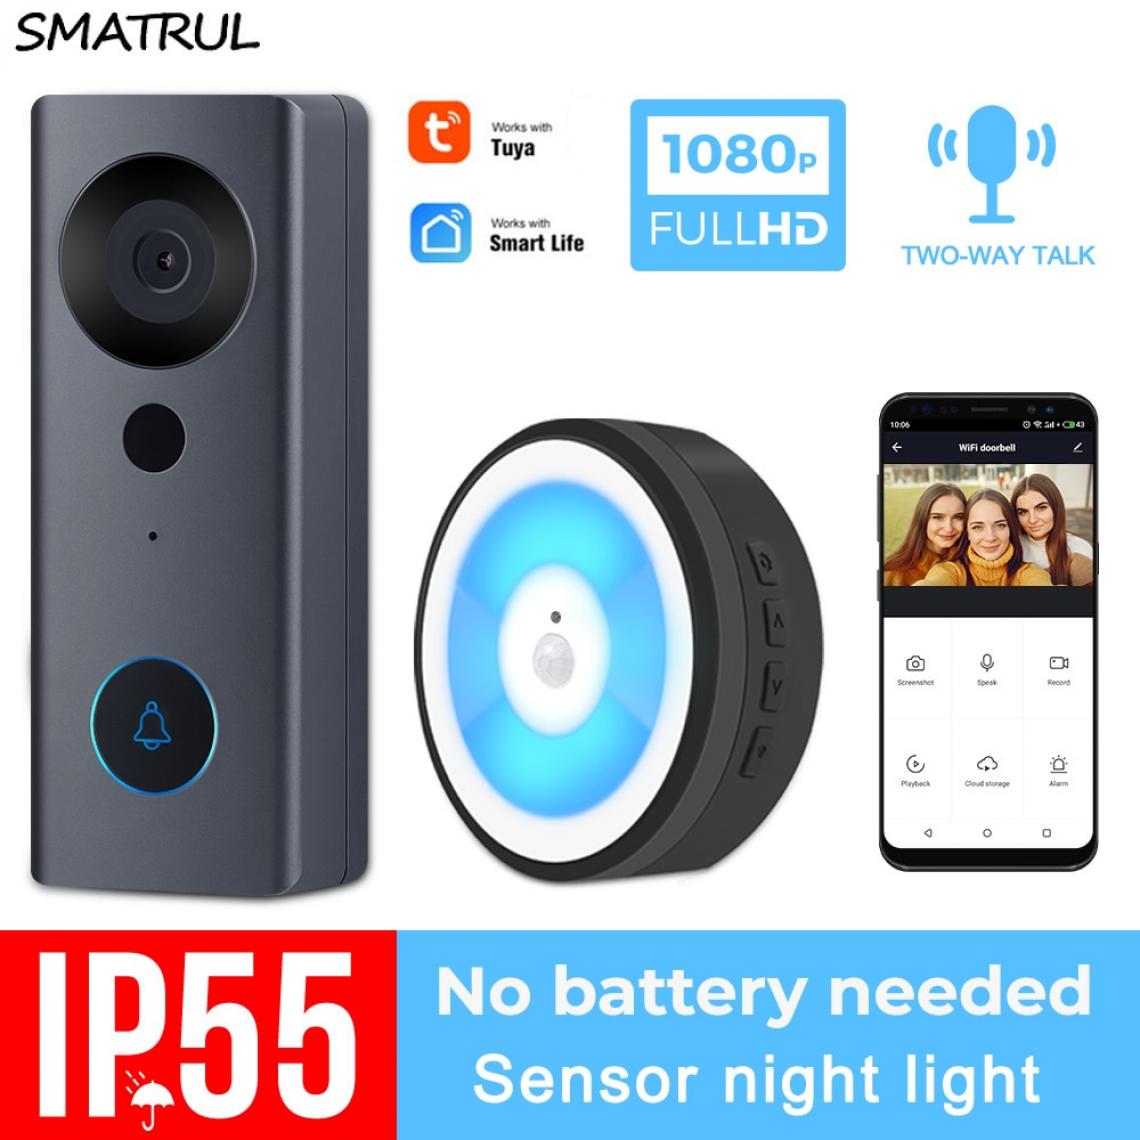 Universal - WiFi HD Vision Smart Nightlight Sonnette sans fil(Le noir) - Sonnette et visiophone connecté